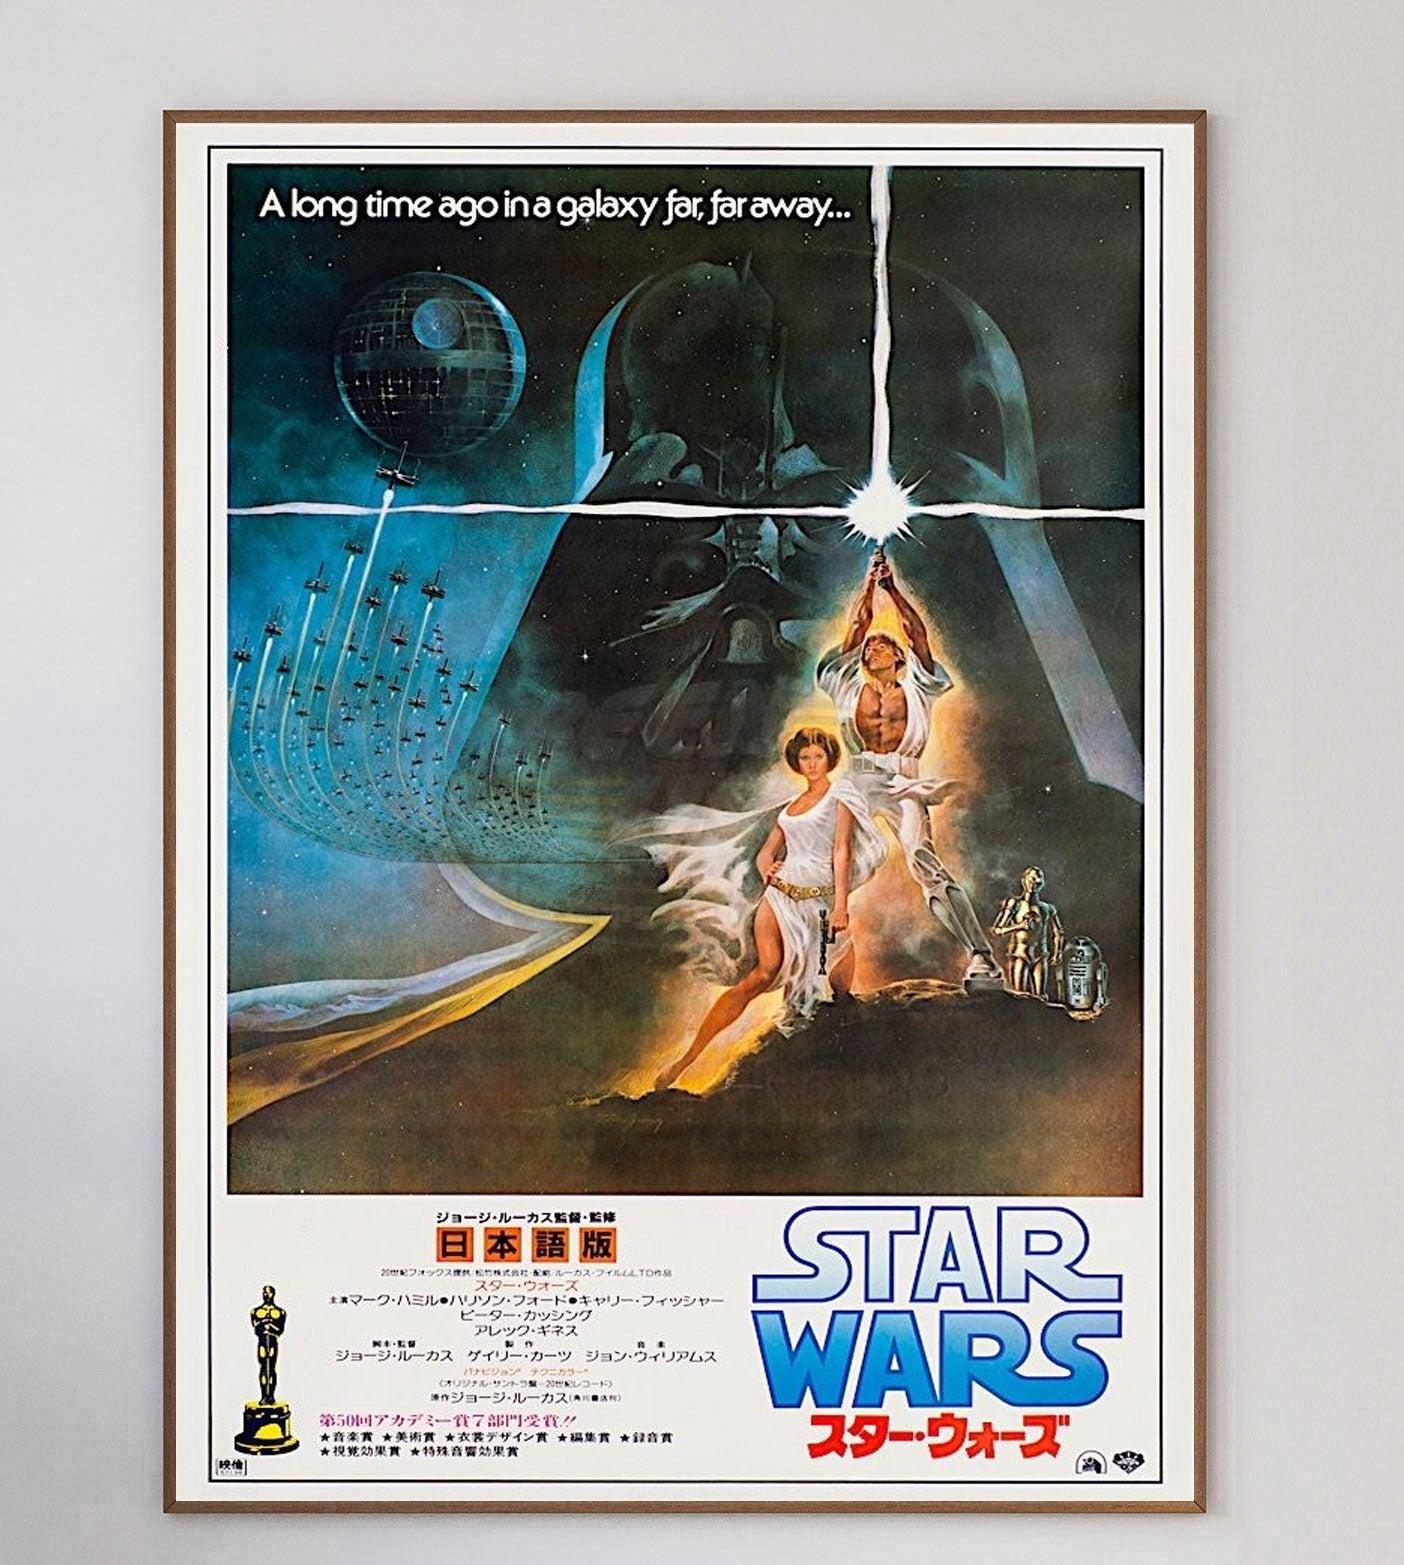 Star Wars (rückwirkend Star Wars: Episode IV - Eine neue Hoffnung genannt) ist ein amerikanisches Weltraum-Opern-Epos aus dem Jahr 1977, geschrieben und inszeniert von George Lucas, produziert von Lucasfilm und vertrieben von 20th Century-Fox. Es